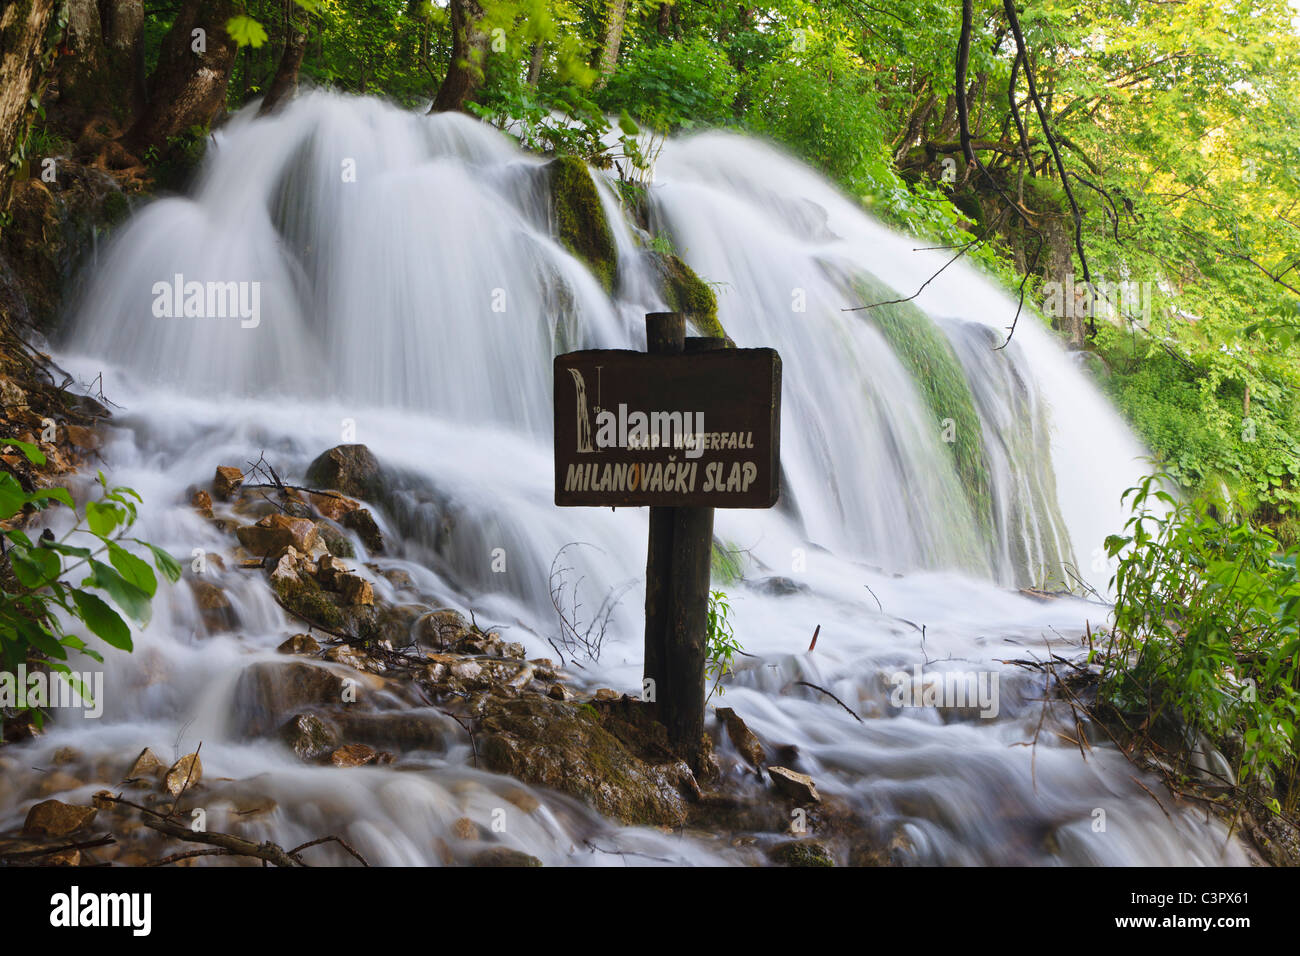 L'Europa, Croazia, Jezera, vista della cascata con milanovacki slap segno della scheda Foto Stock